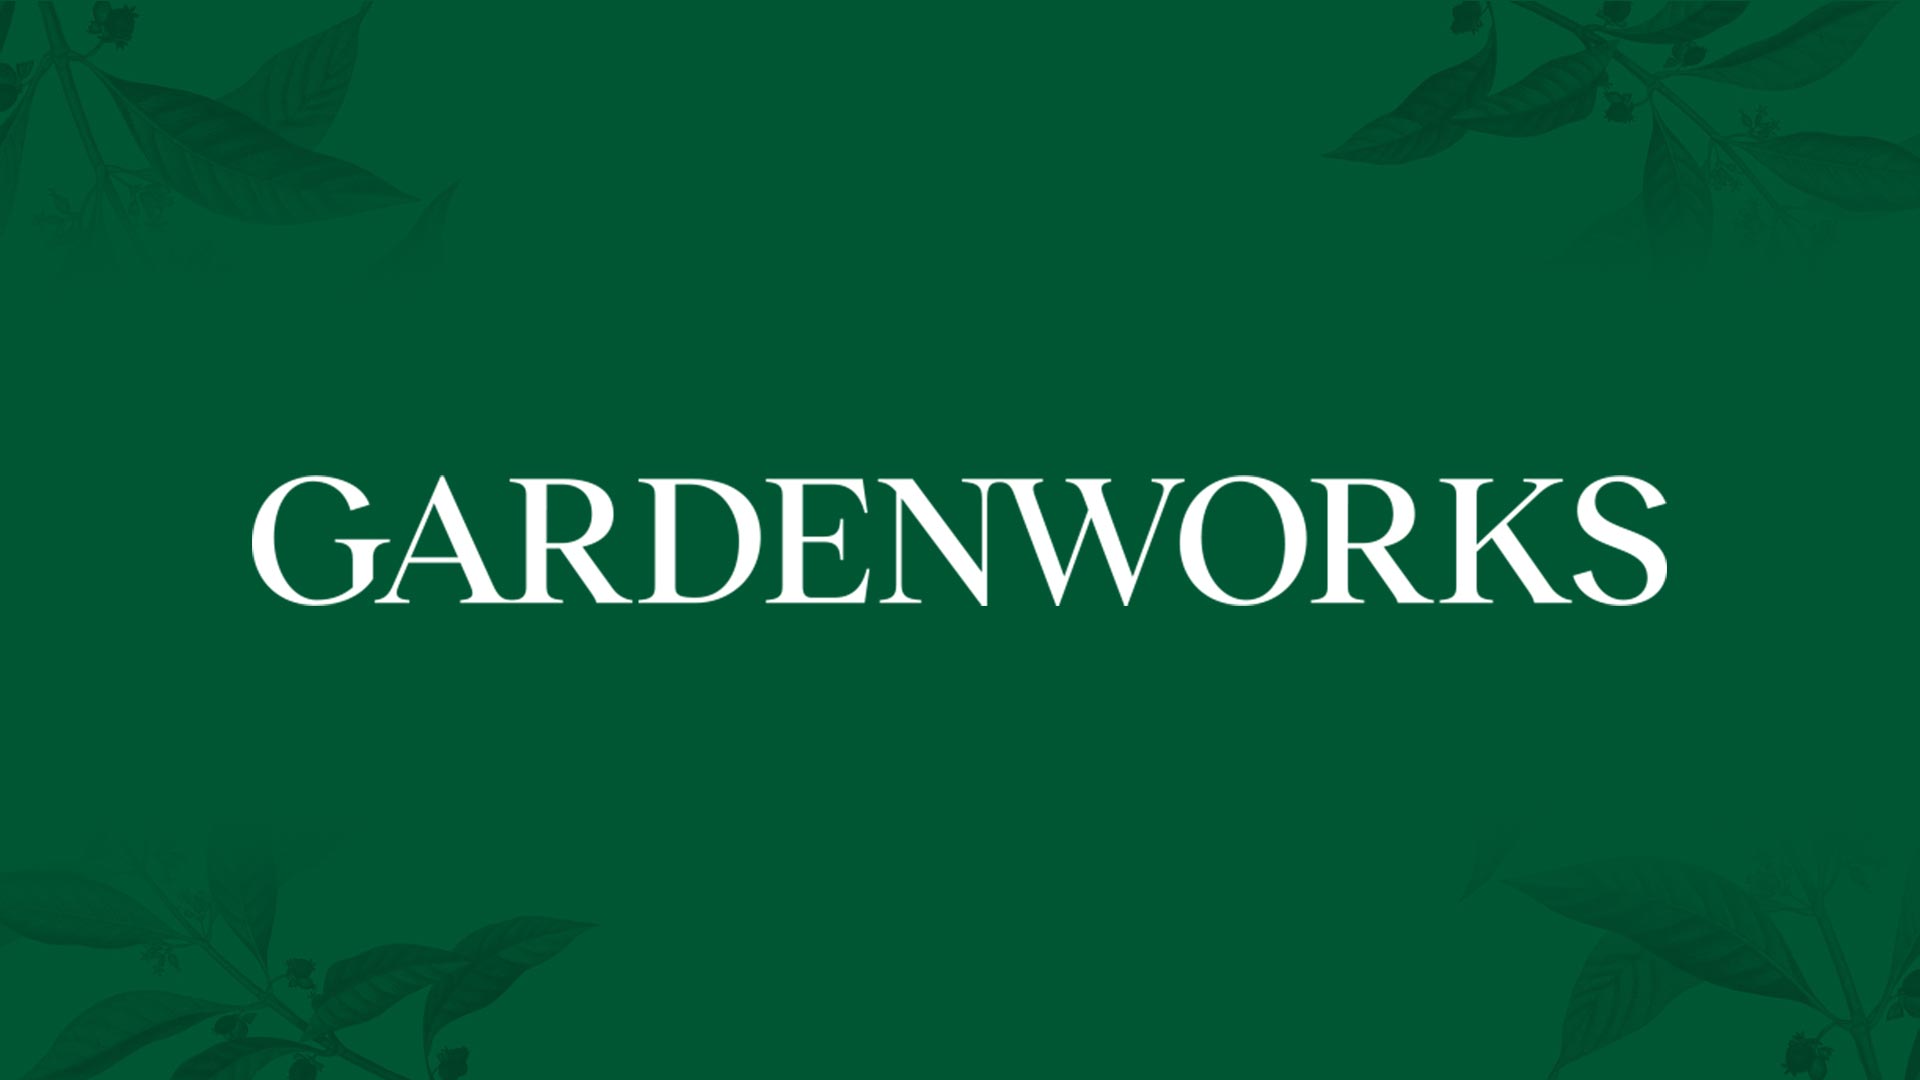 GardenWorks garden centres